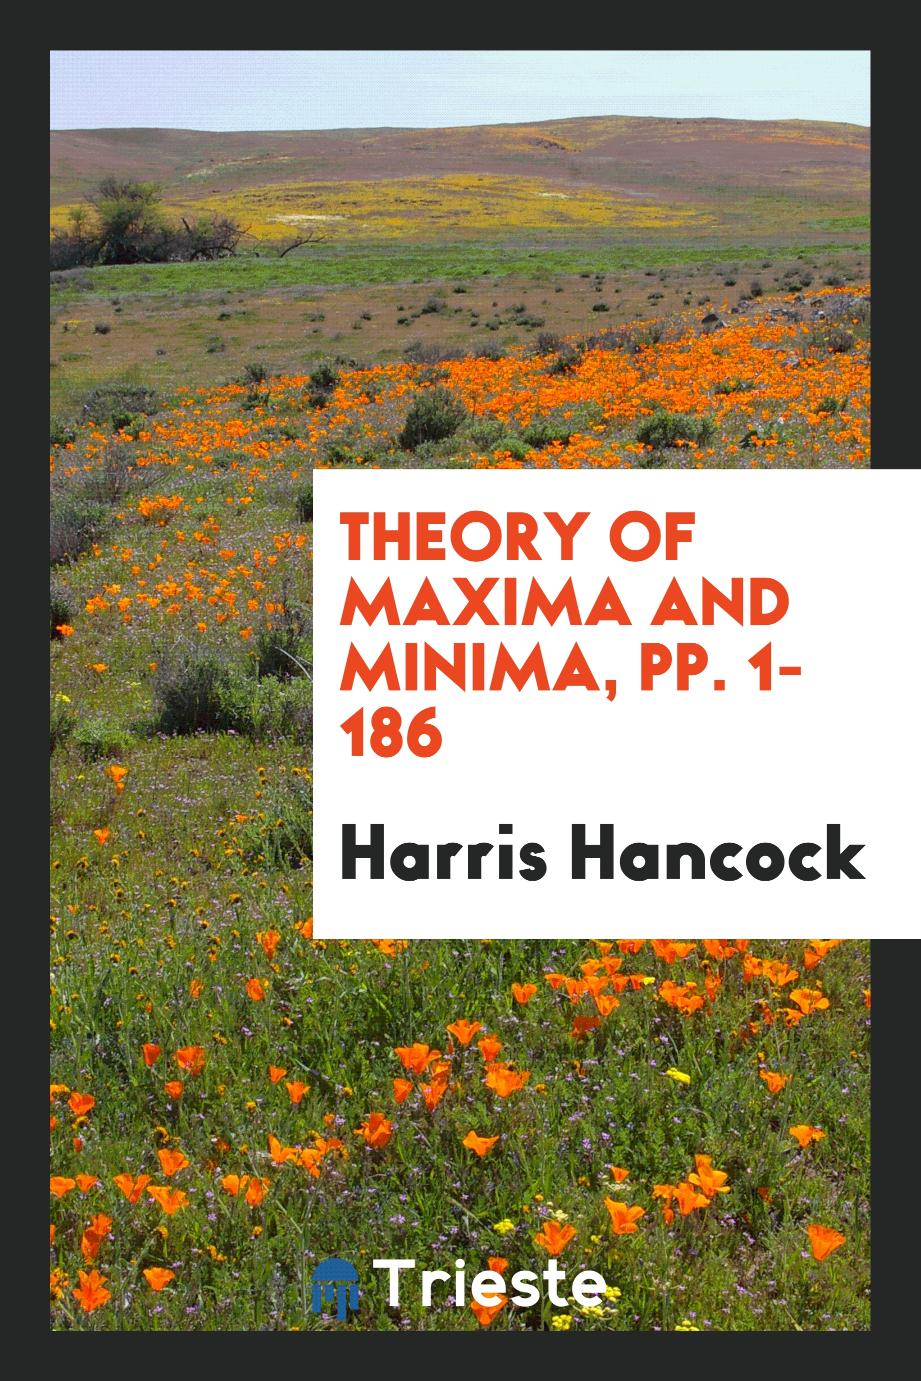 Theory of Maxima and Minima, pp. 1-186